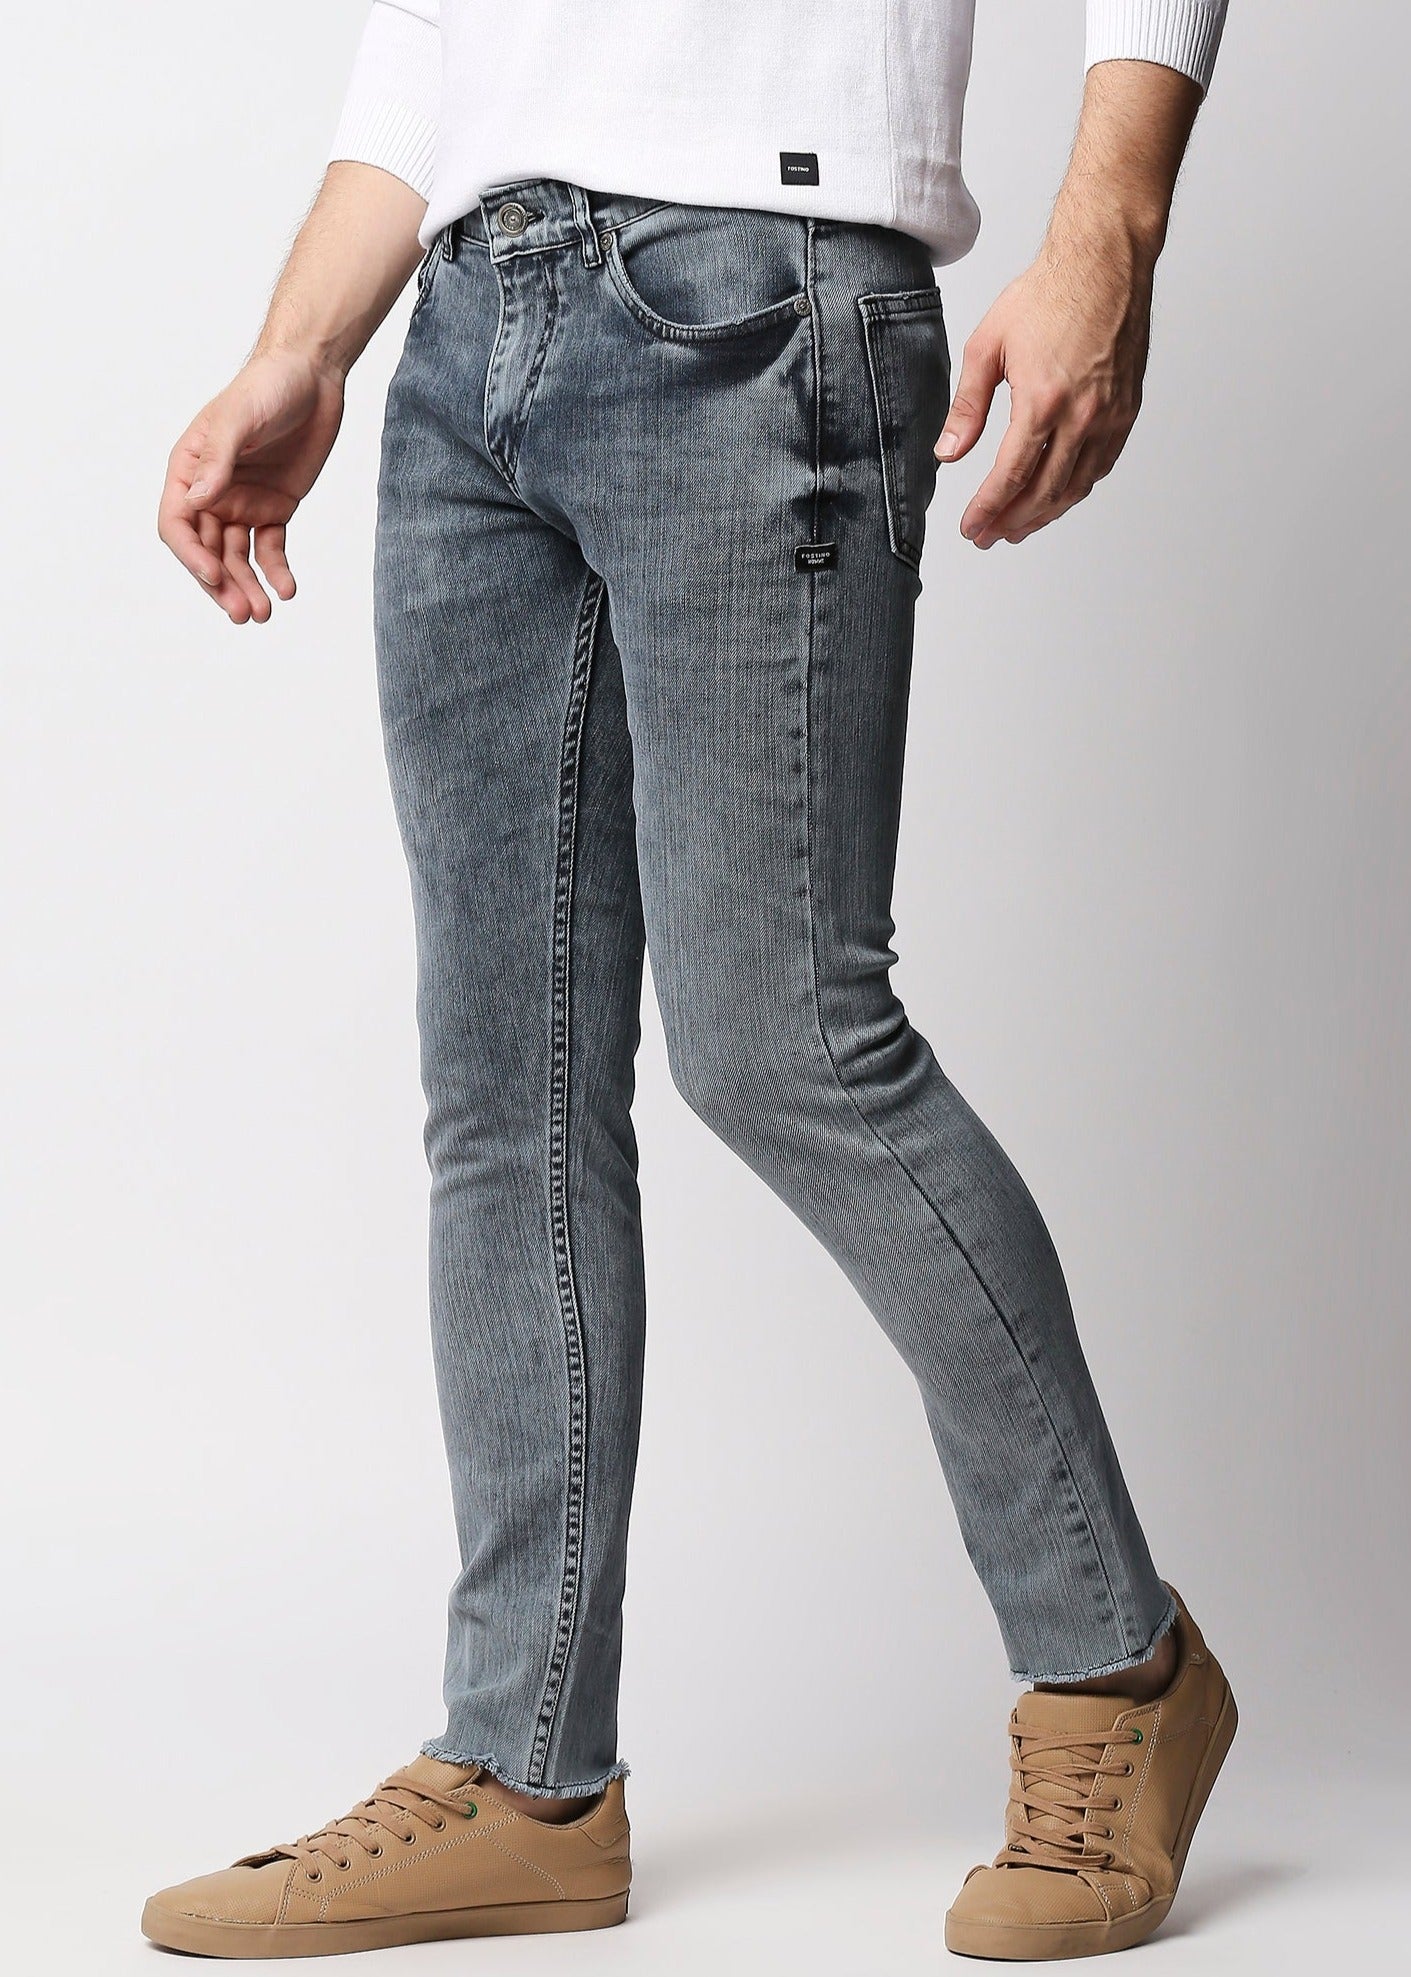 Fostino Grey Wash Jeans - Fostino - Jeans